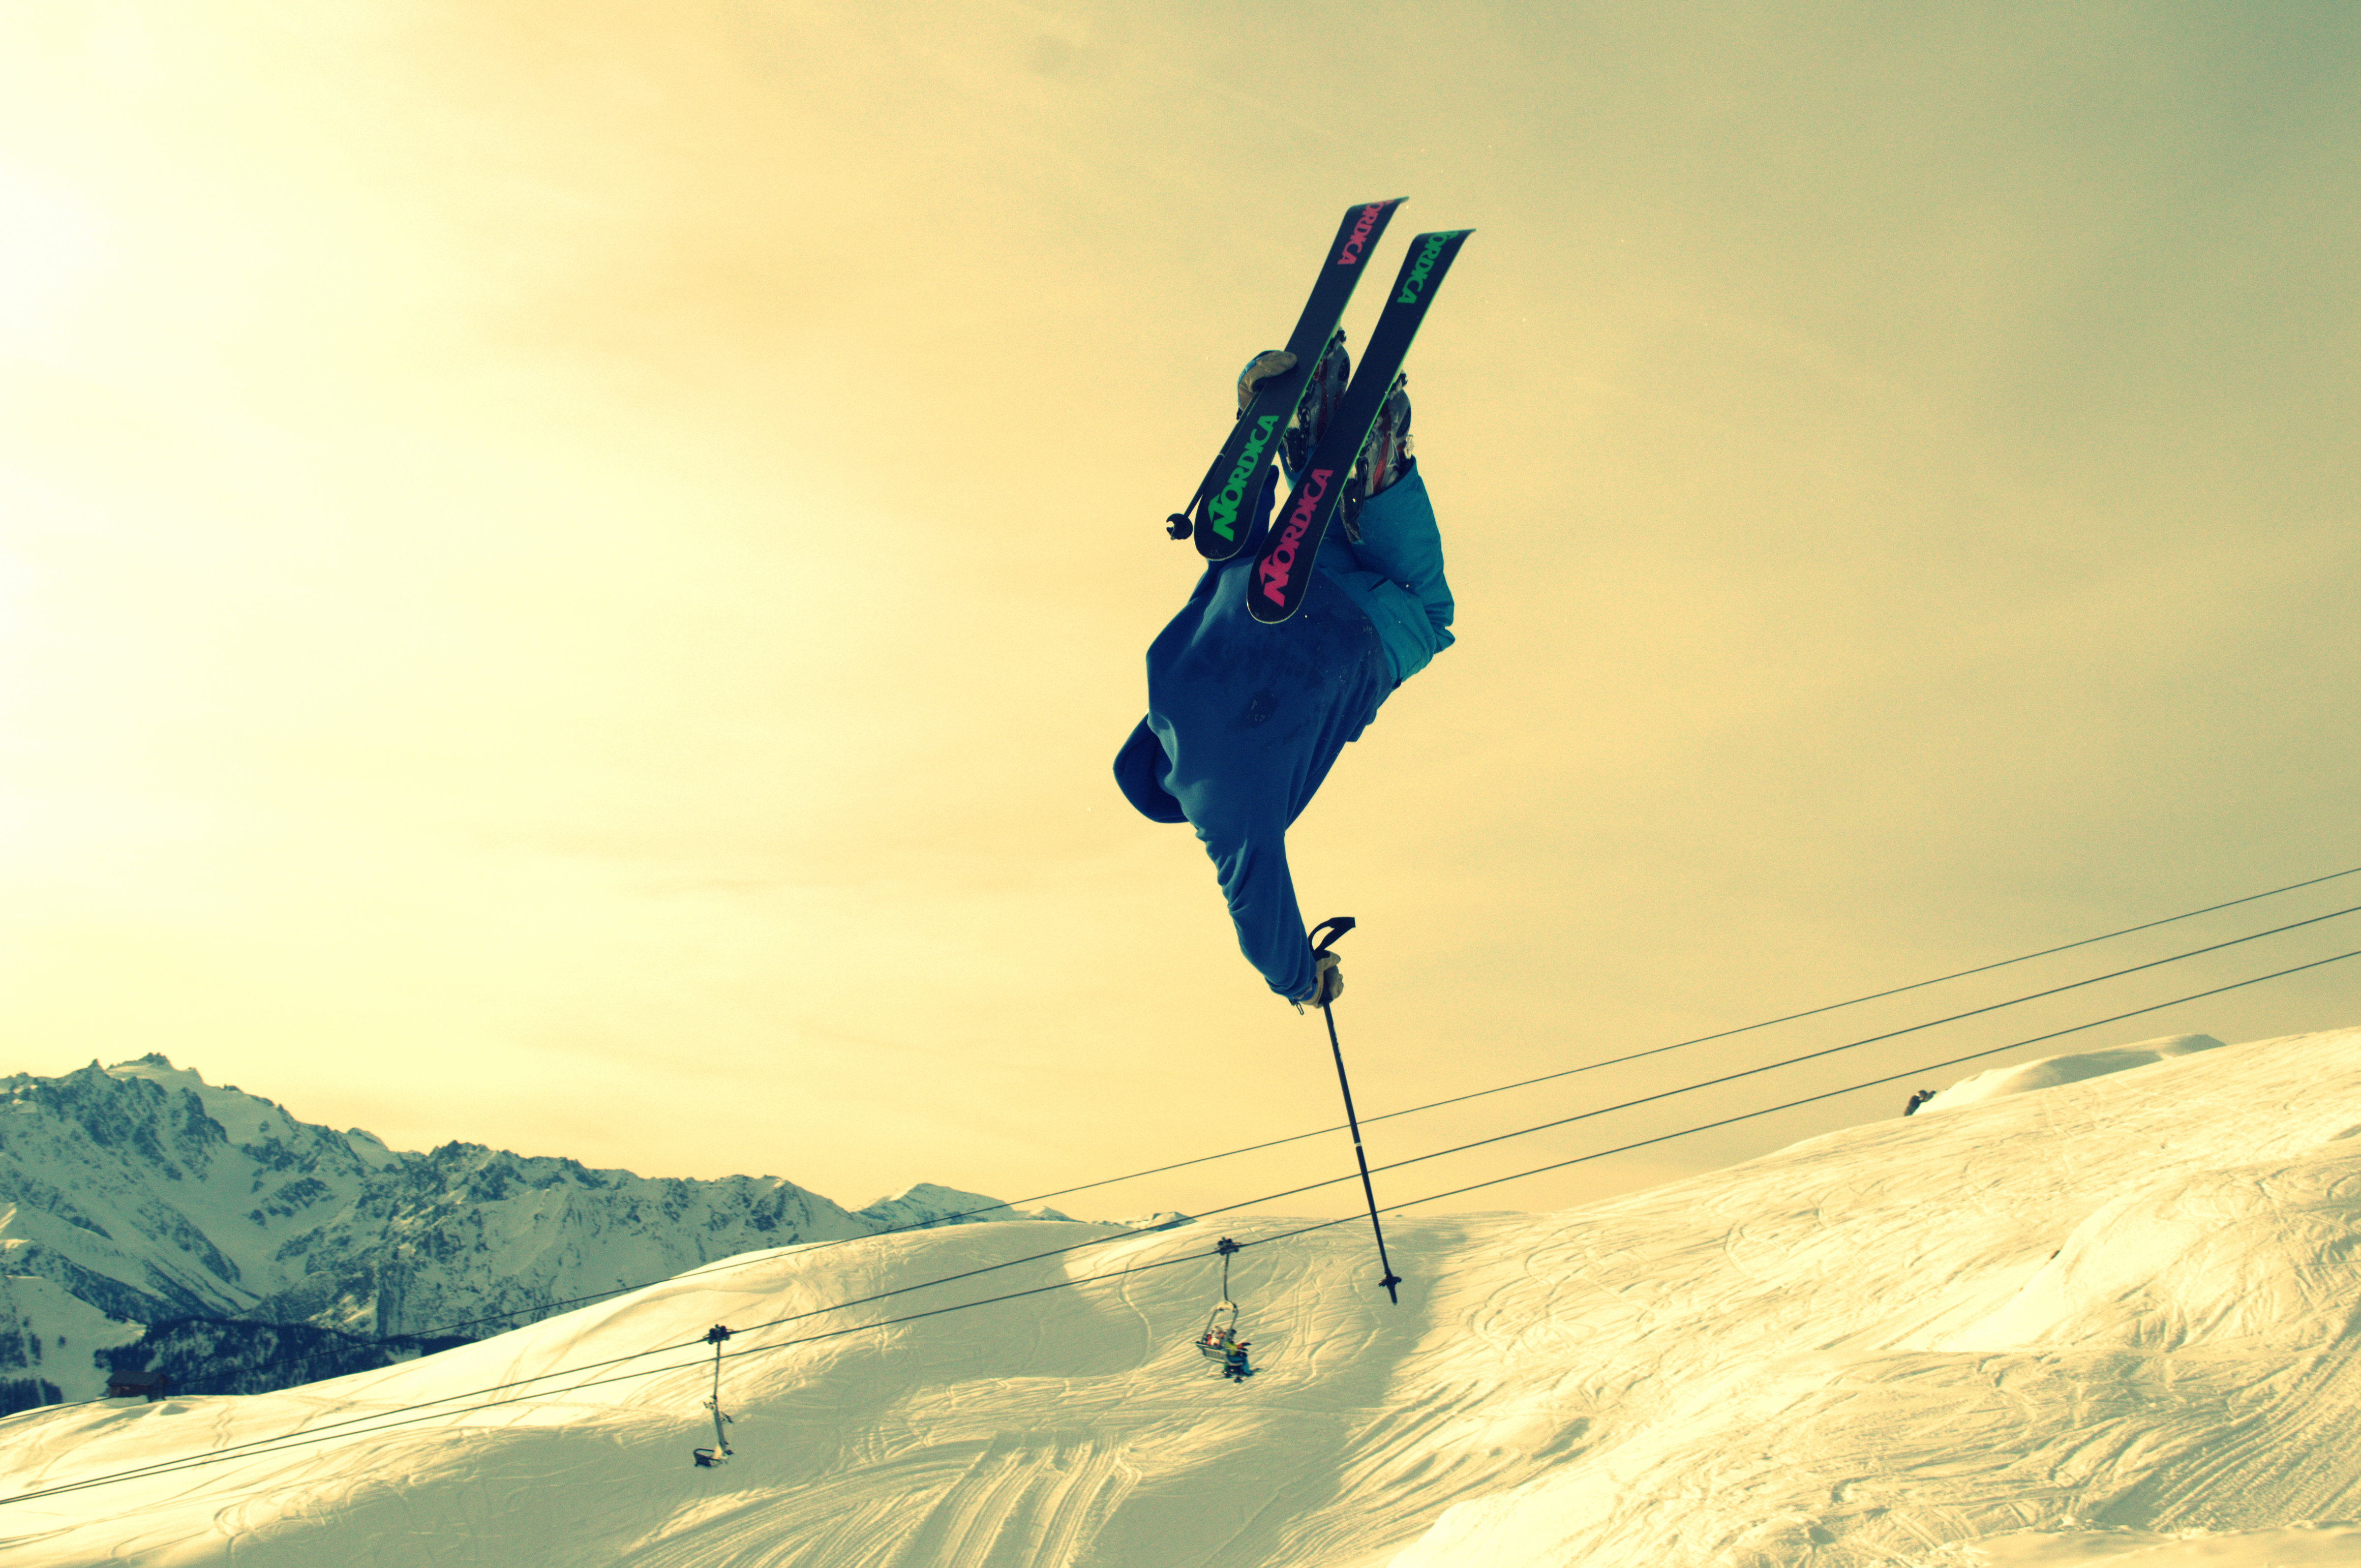 Photoblog: the ski photoshoot